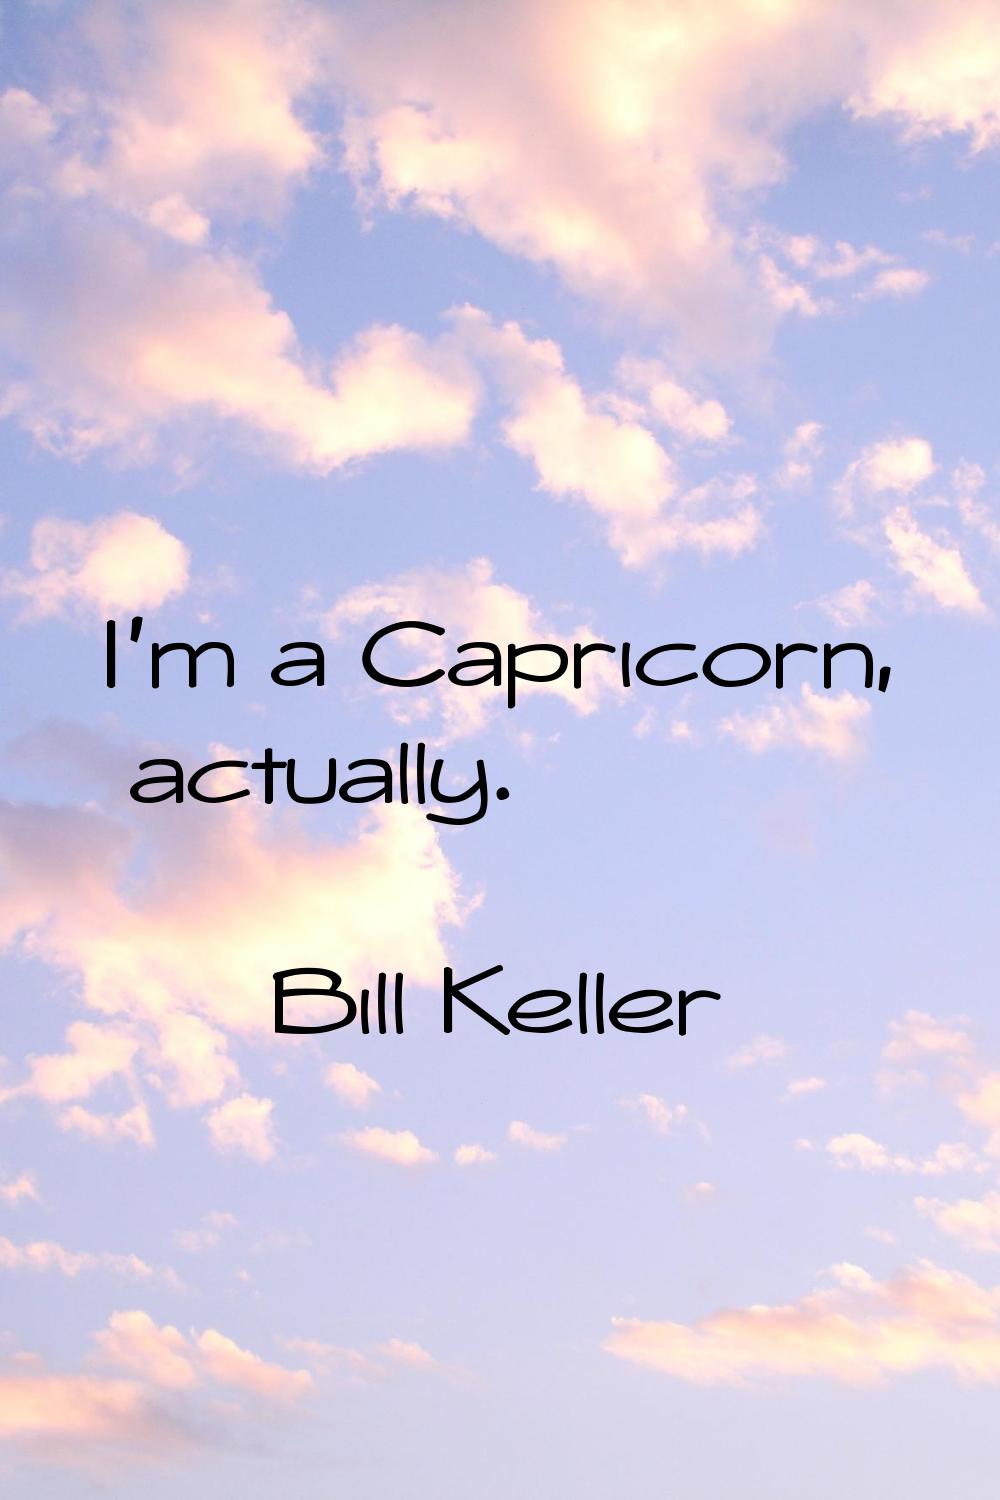 I'm a Capricorn, actually.